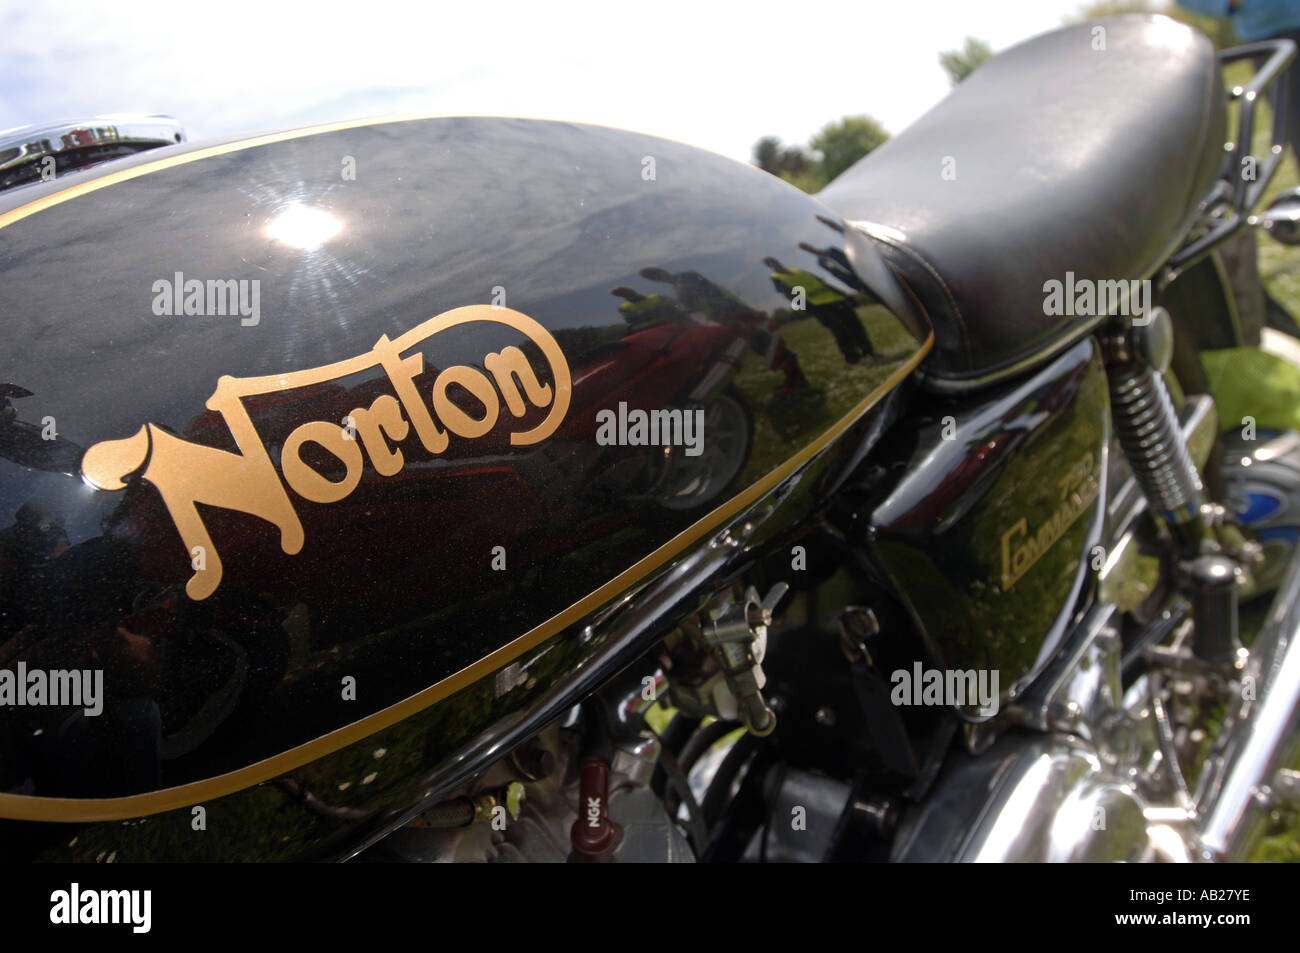 Vintage Norton Commando 750 motocicletta in corrispondenza di un rally o riunione, Gran Bretagna REGNO UNITO Foto Stock